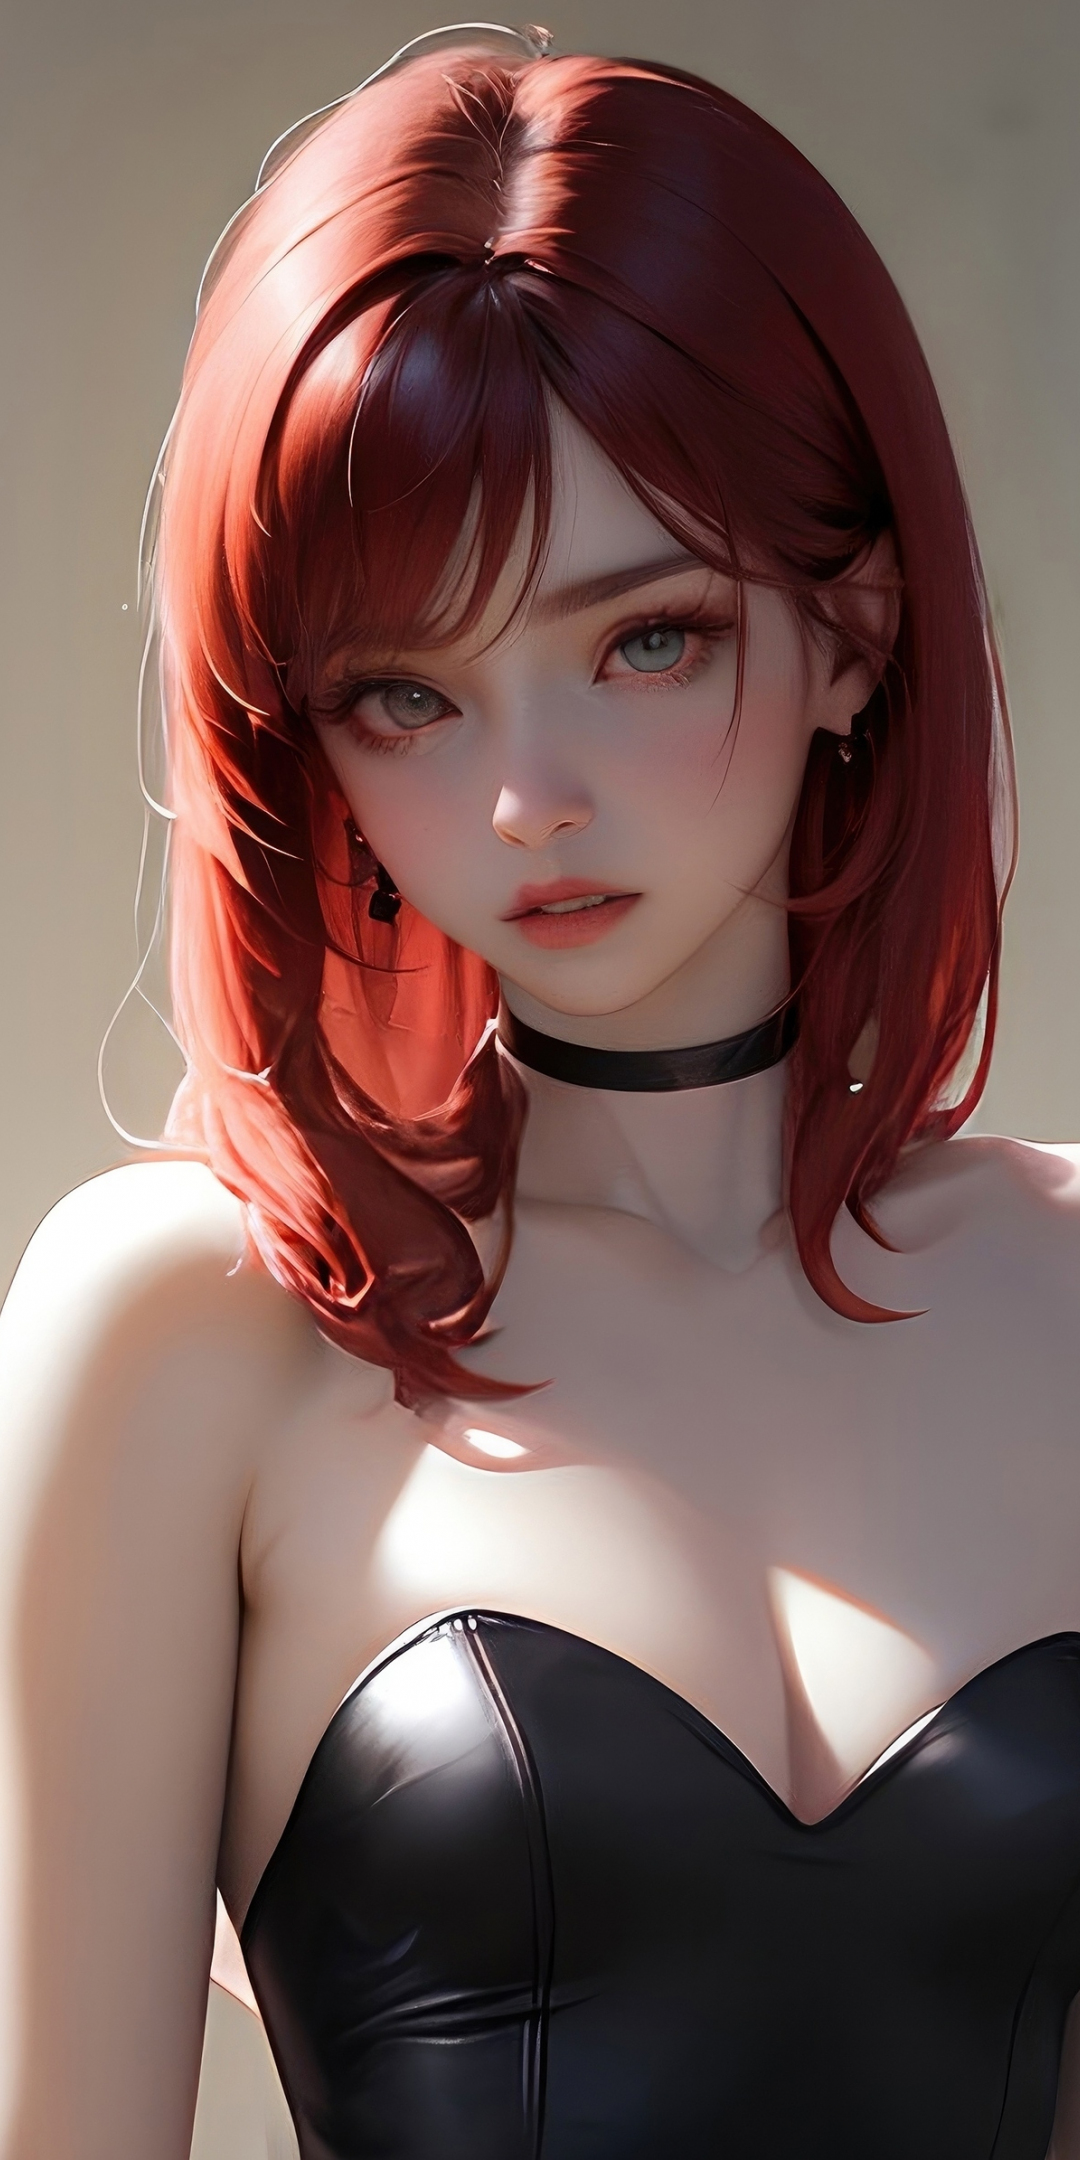 Bat wings, beautiful girl, redhead, art, 1080x2160 wallpaper